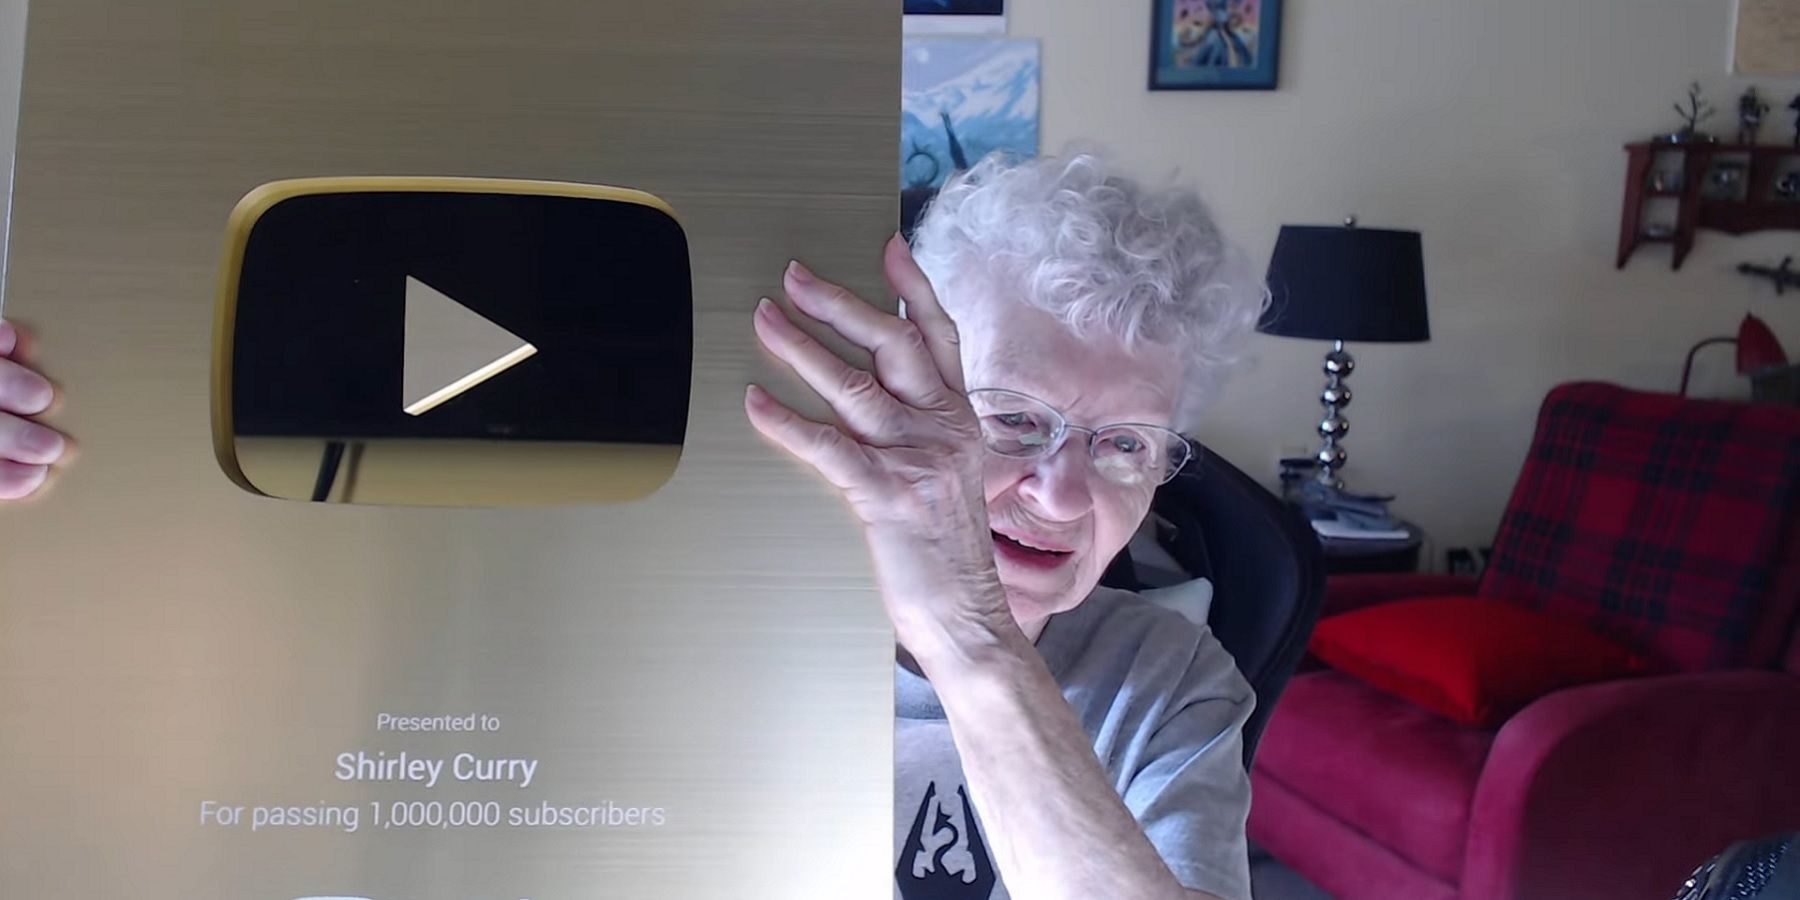 Skyrim Grandma là ai? Cụ bà 85 tuổi yêu game vừa nhận được nút Vàng YouTube